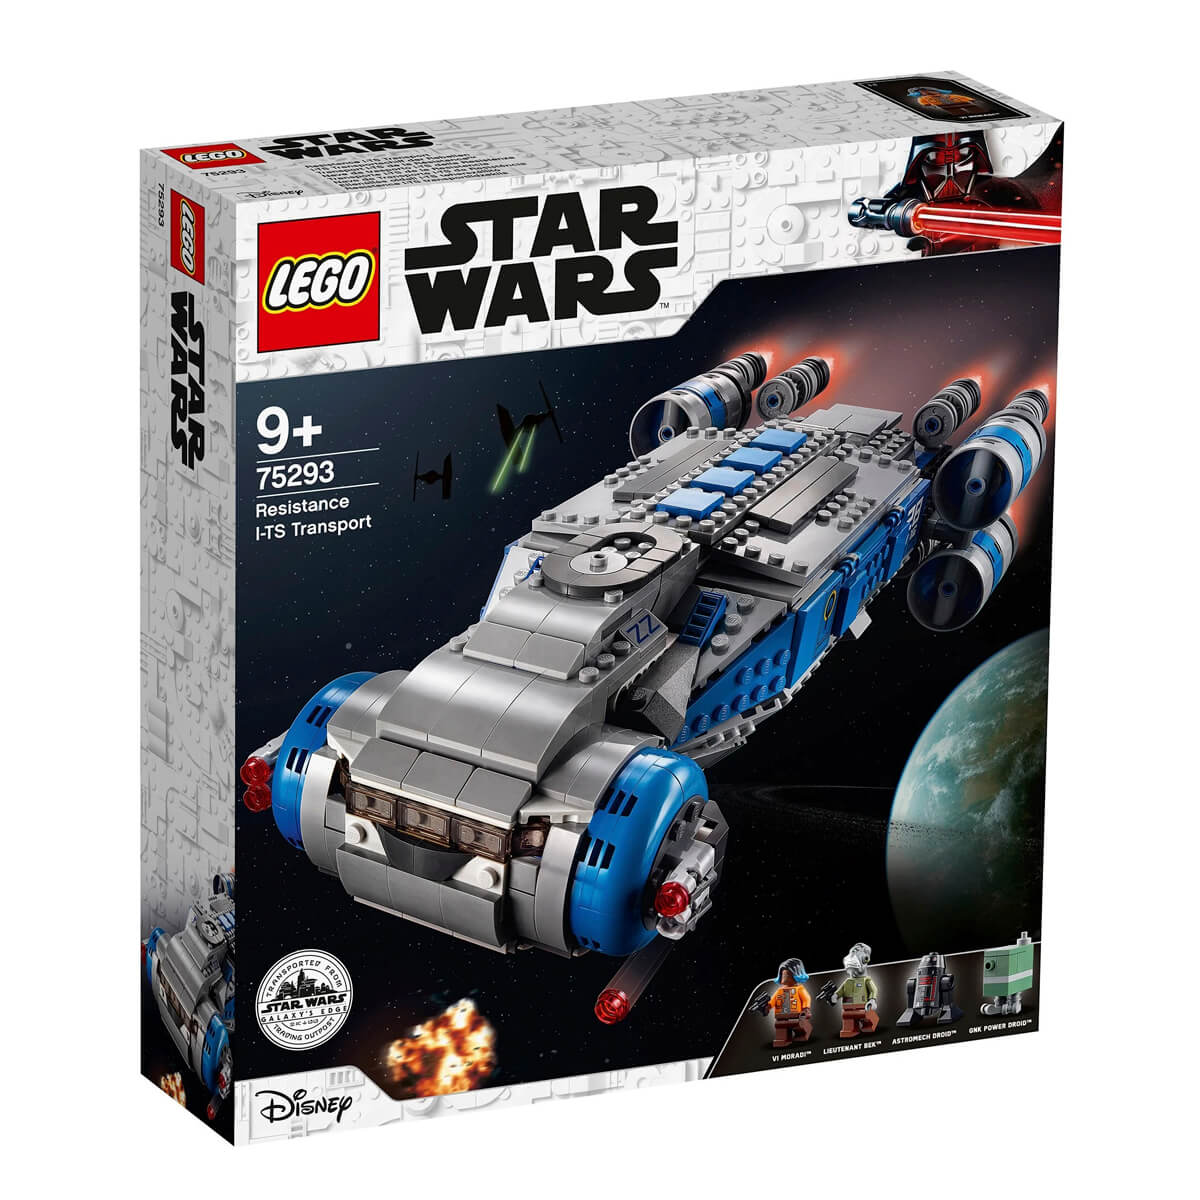 Конструктор LEGO Star Wars 75293 Транспортный корабль Сопротивления I-TS конструктор lego star wars 75307 звездные войны